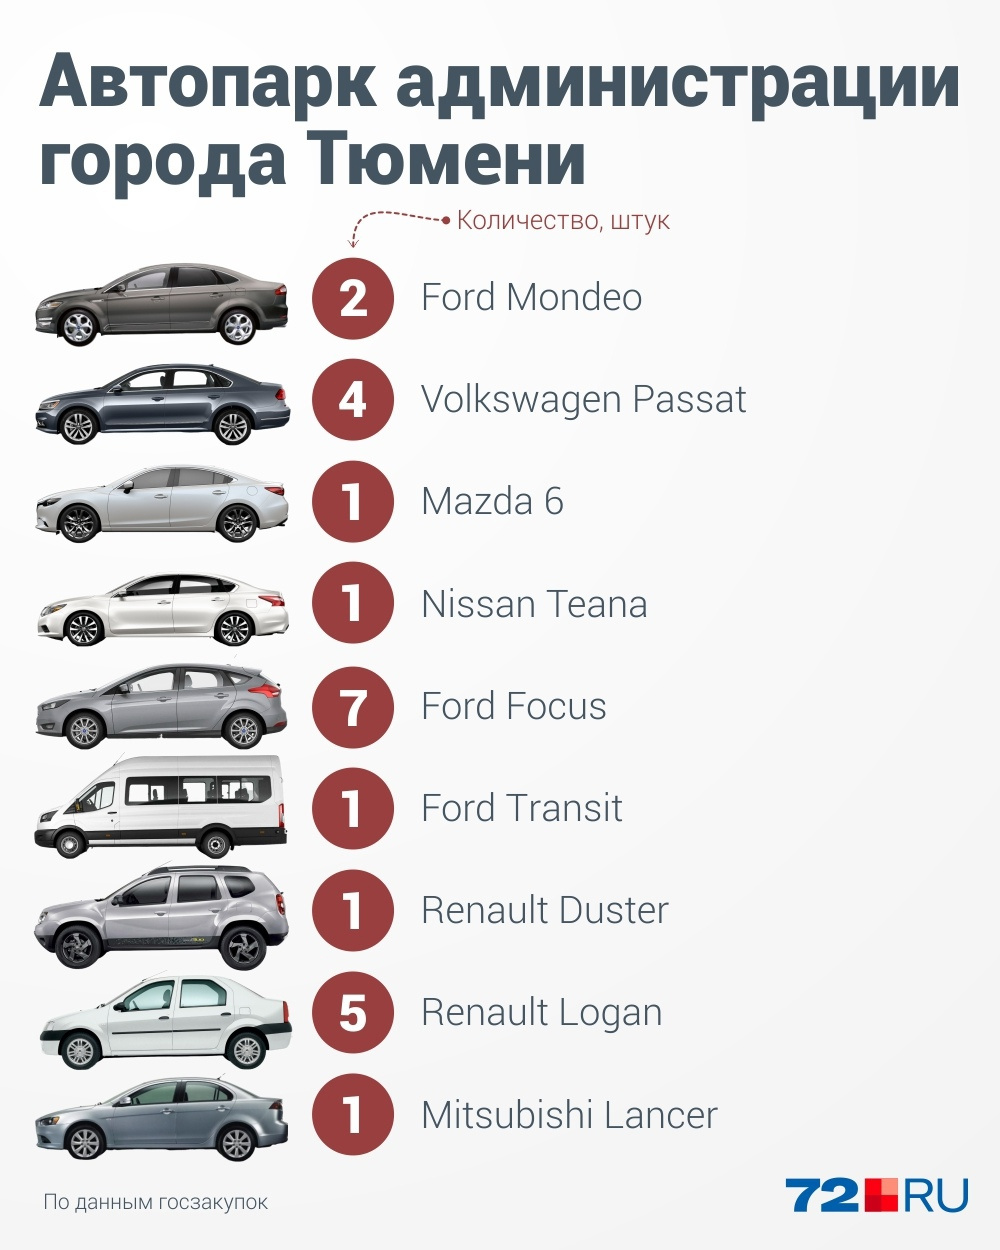 Самые непопулярные автомобили известных марок — это Mazda и Mitsubishi. Их по одному экземпляру